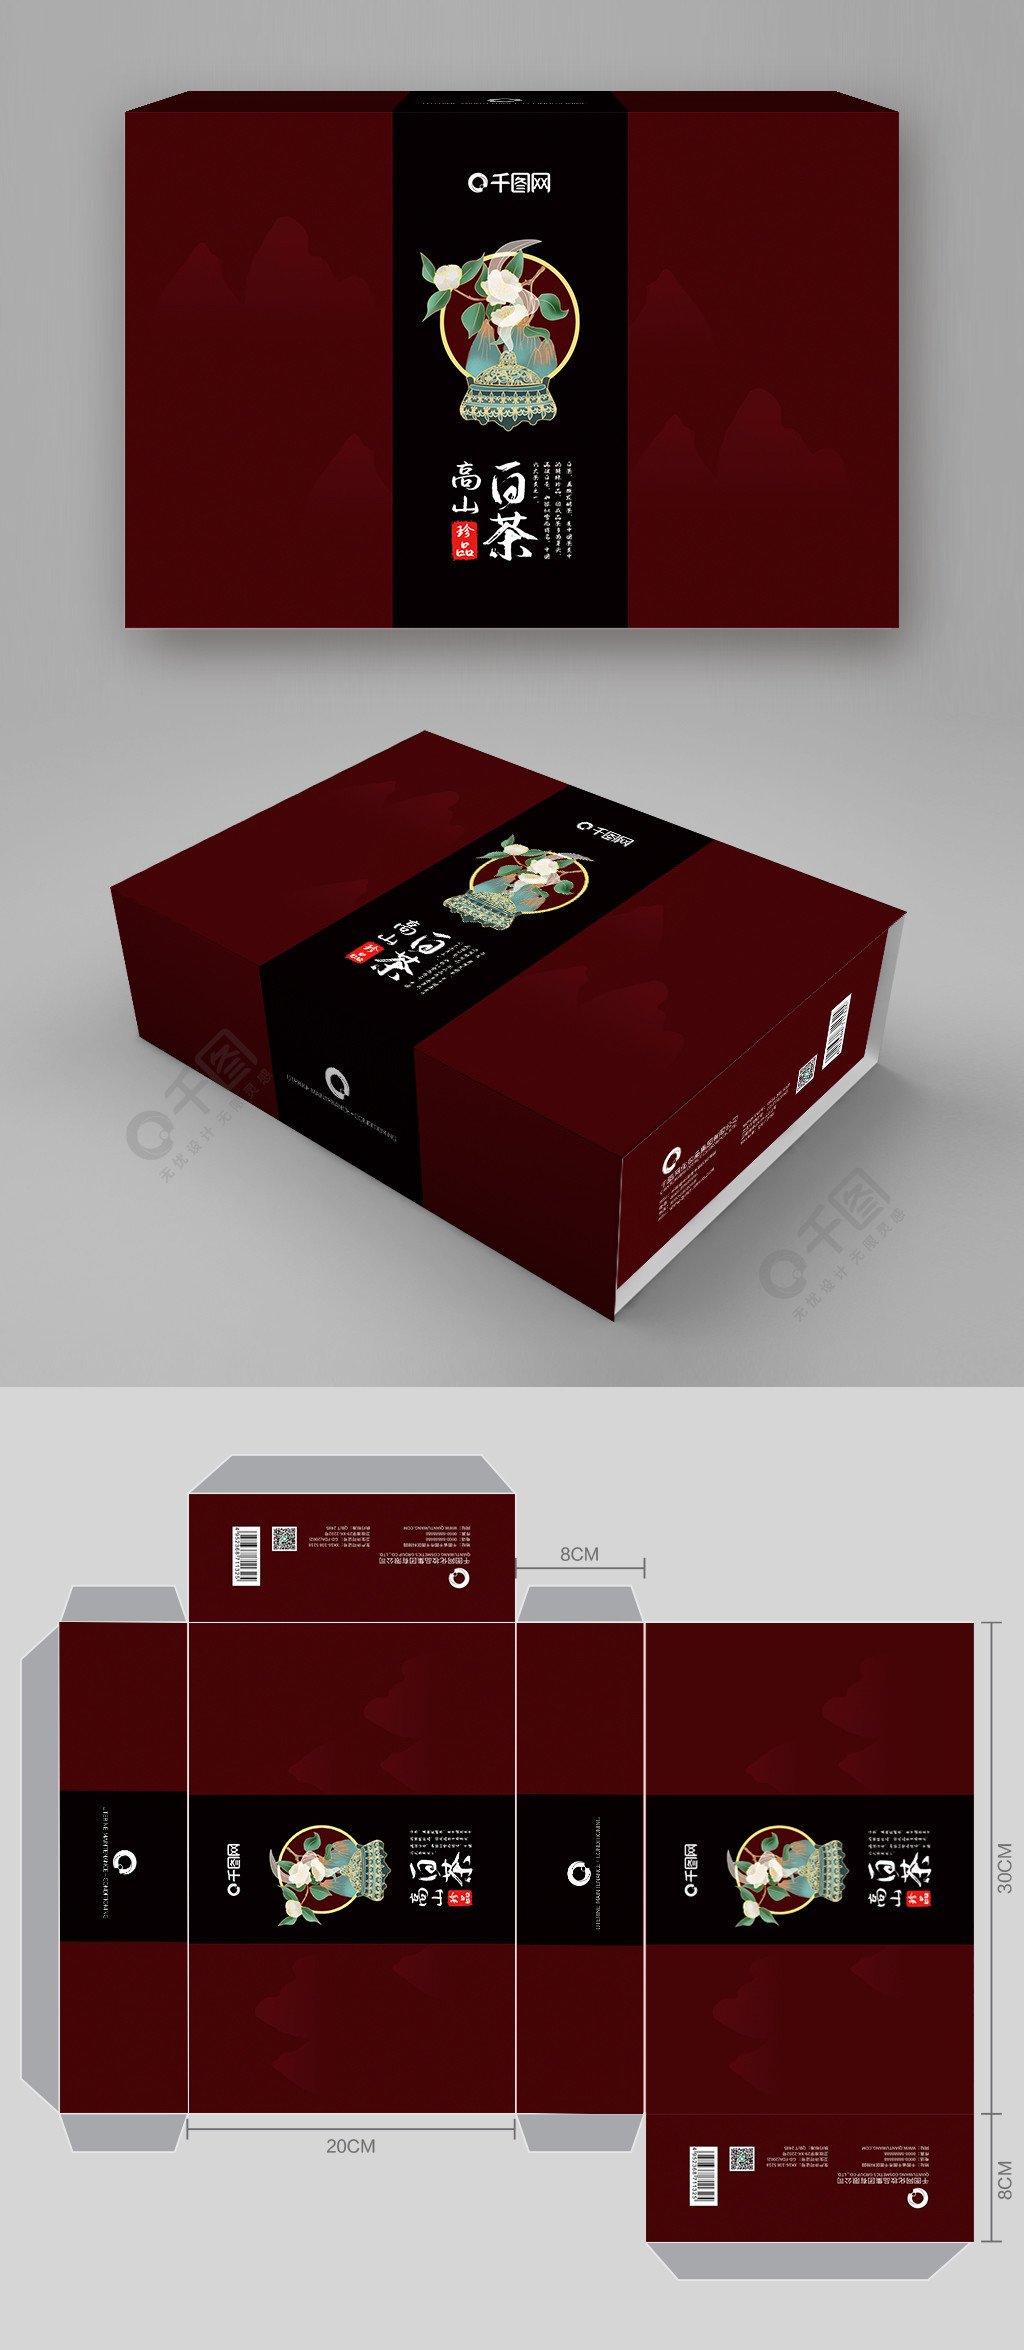 06年全兴大曲红盒包装52度价格_礼品包装盒印刷价格_卓艺礼品印刷